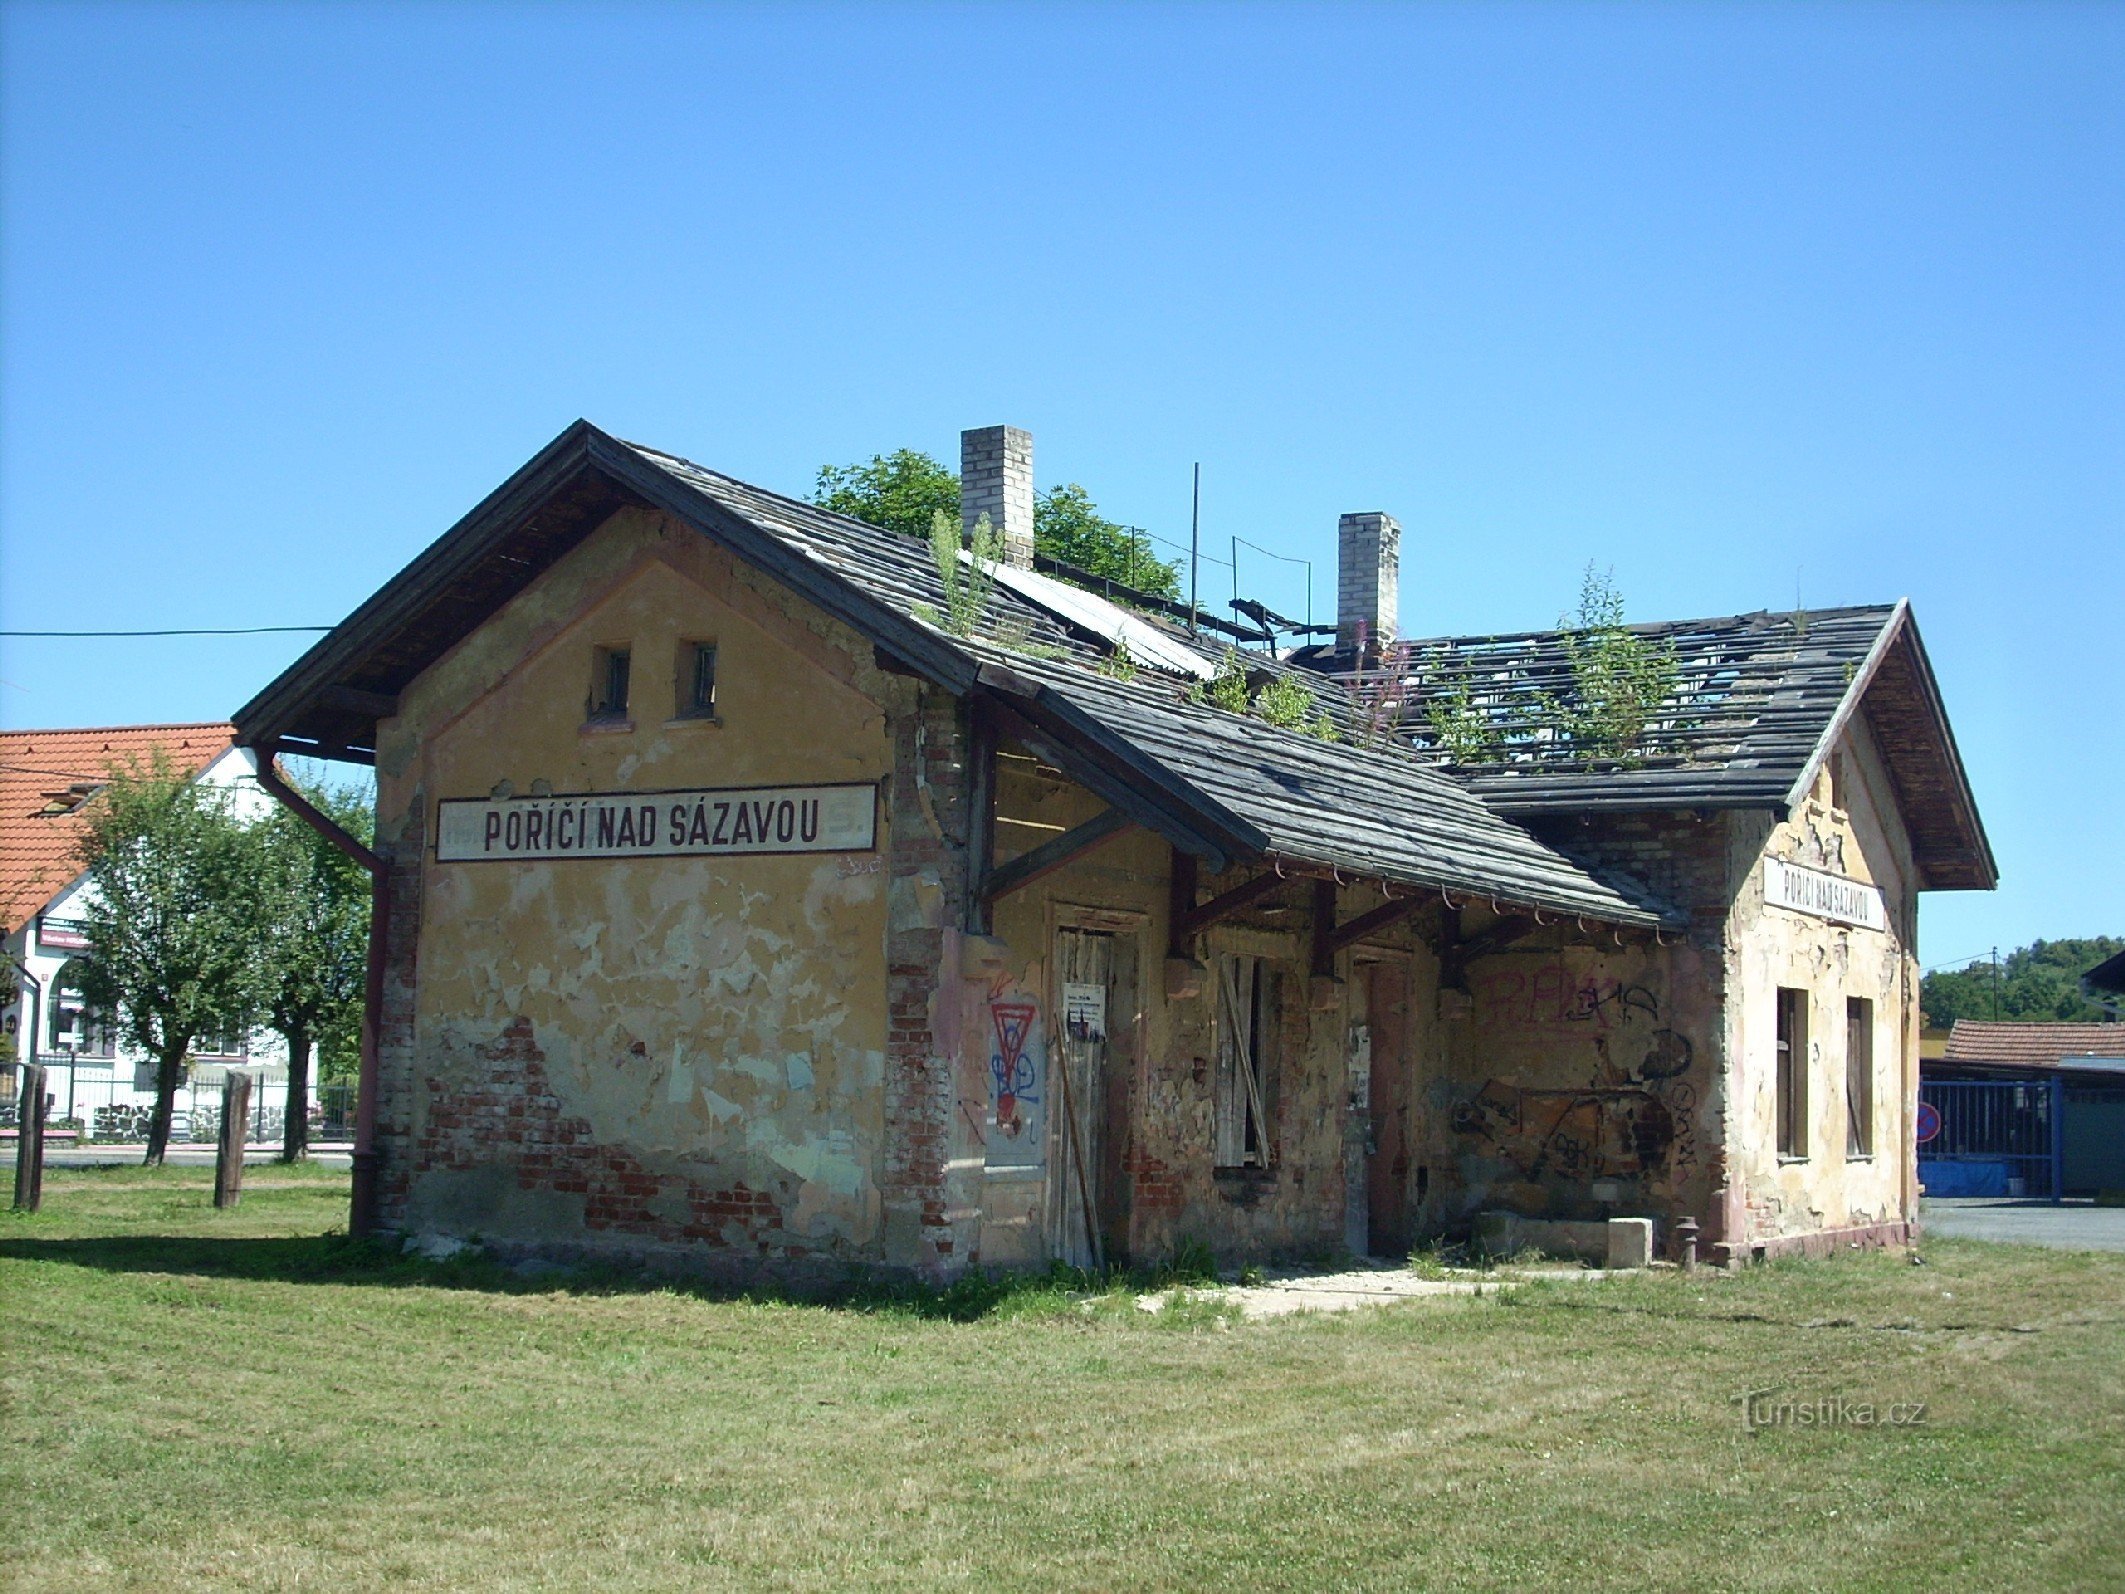 2. Poříčí nad Sázavou 的火车站——照片显示小火车站是如何逐渐消失的